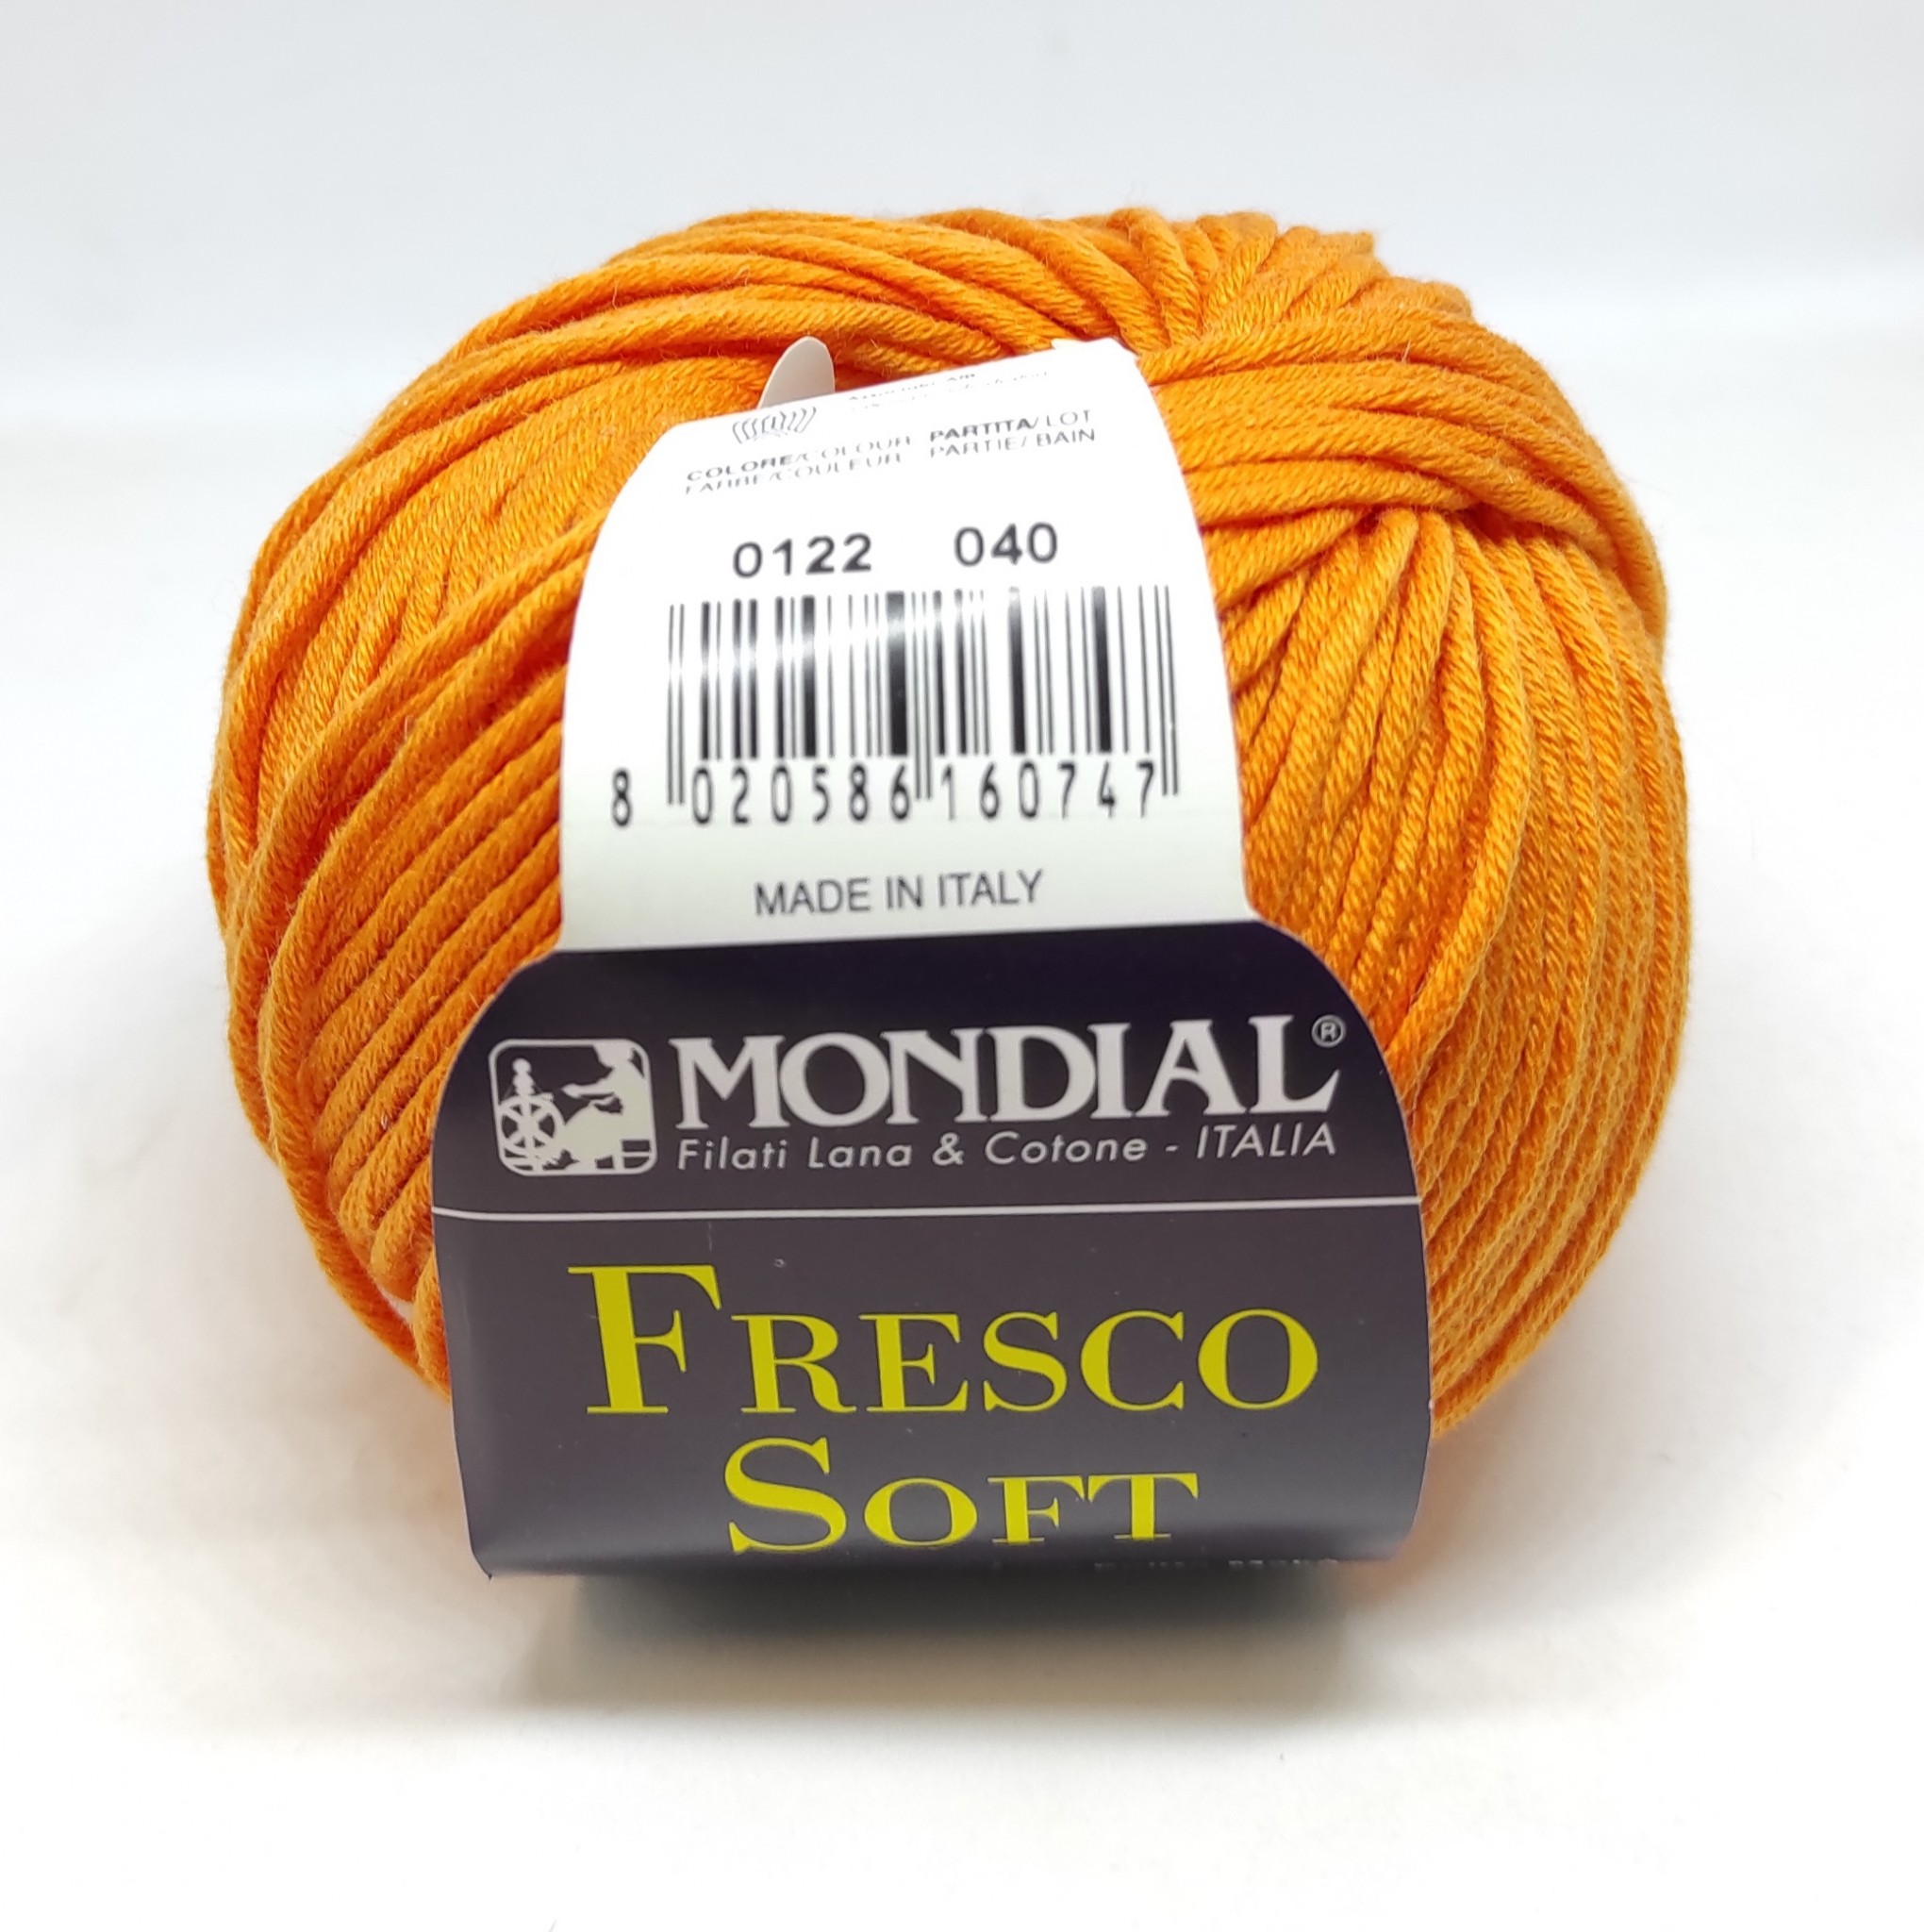 gomitolo di cotone “Fresco Soft” 50 g. arancione, Mondial